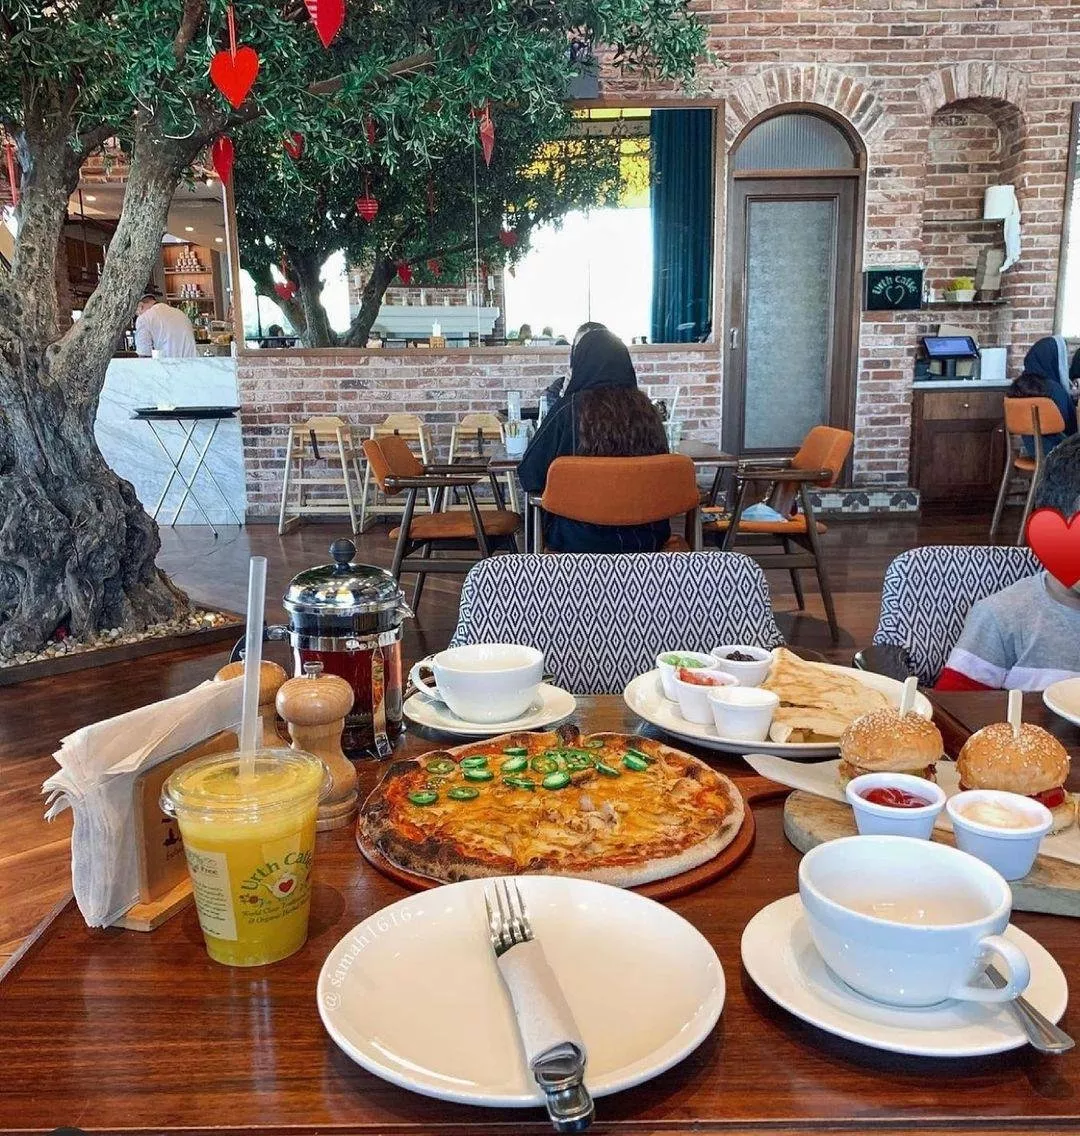 مقاهي    مقهى   شاي    افضل مقاهي الرياض   افضل مقهى في الرياض   الرياض   المملكة العرية السعودية   السعودية